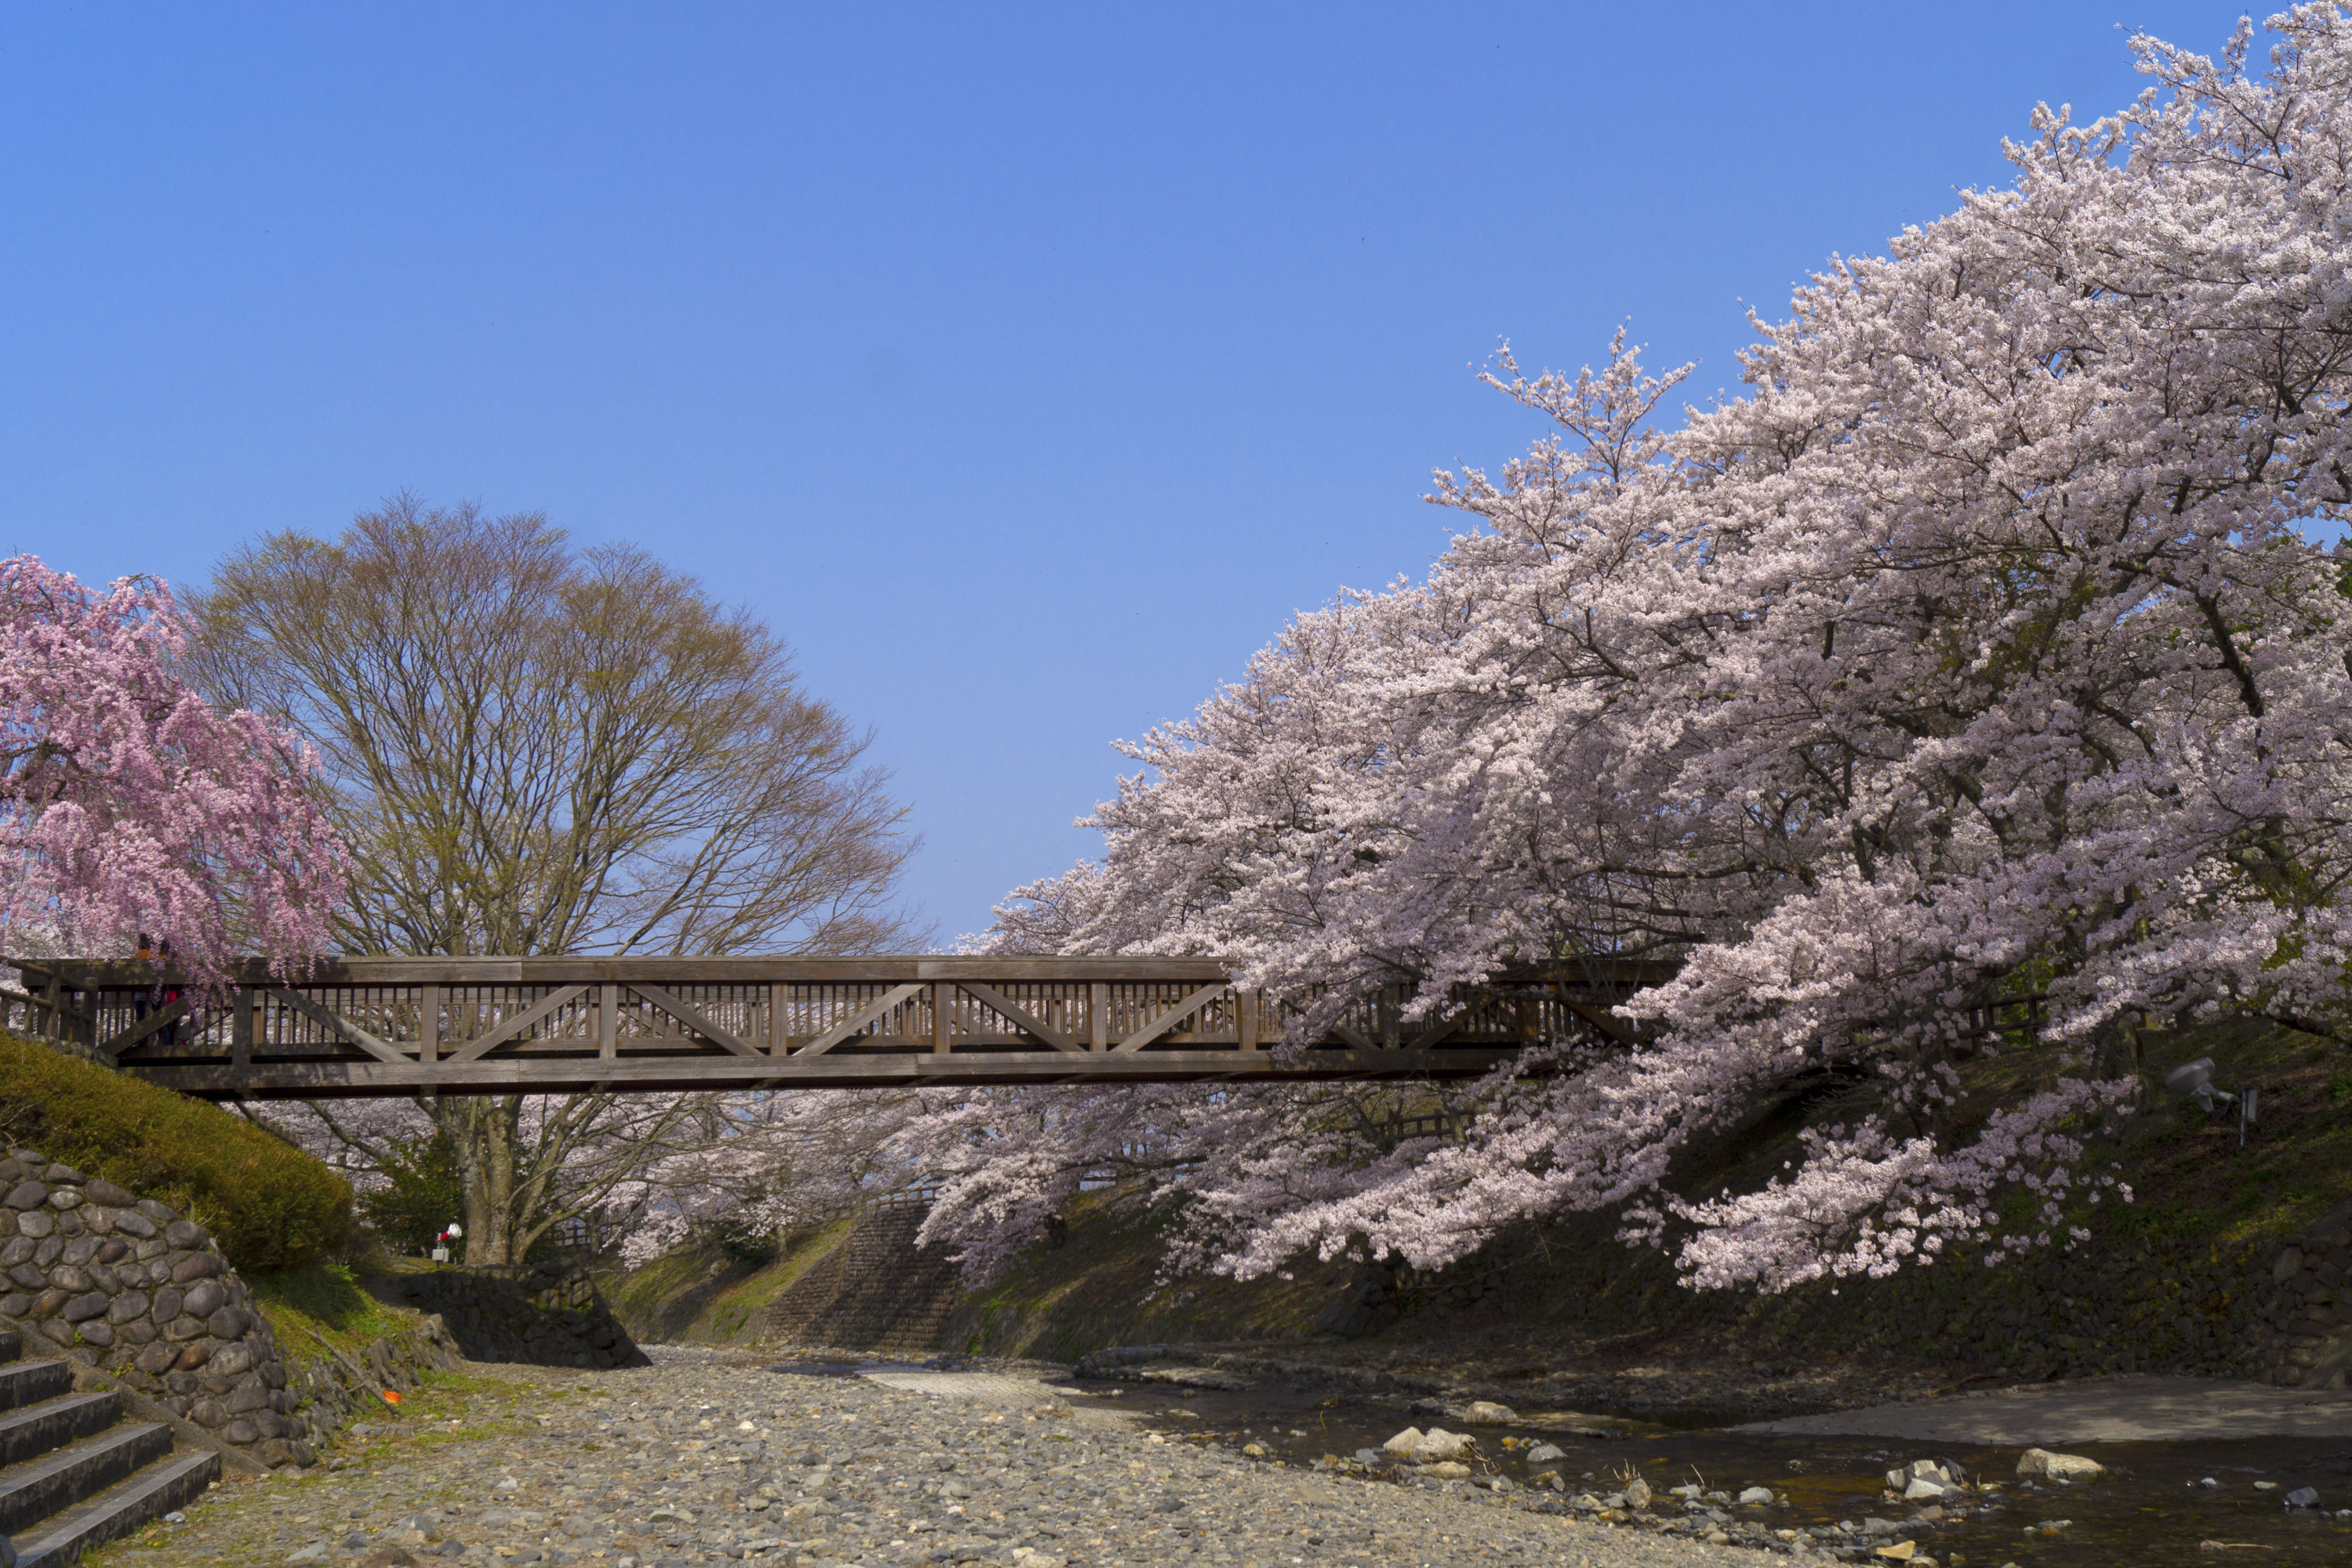 京都 亀岡 和らぎの道 遊歩道の橋